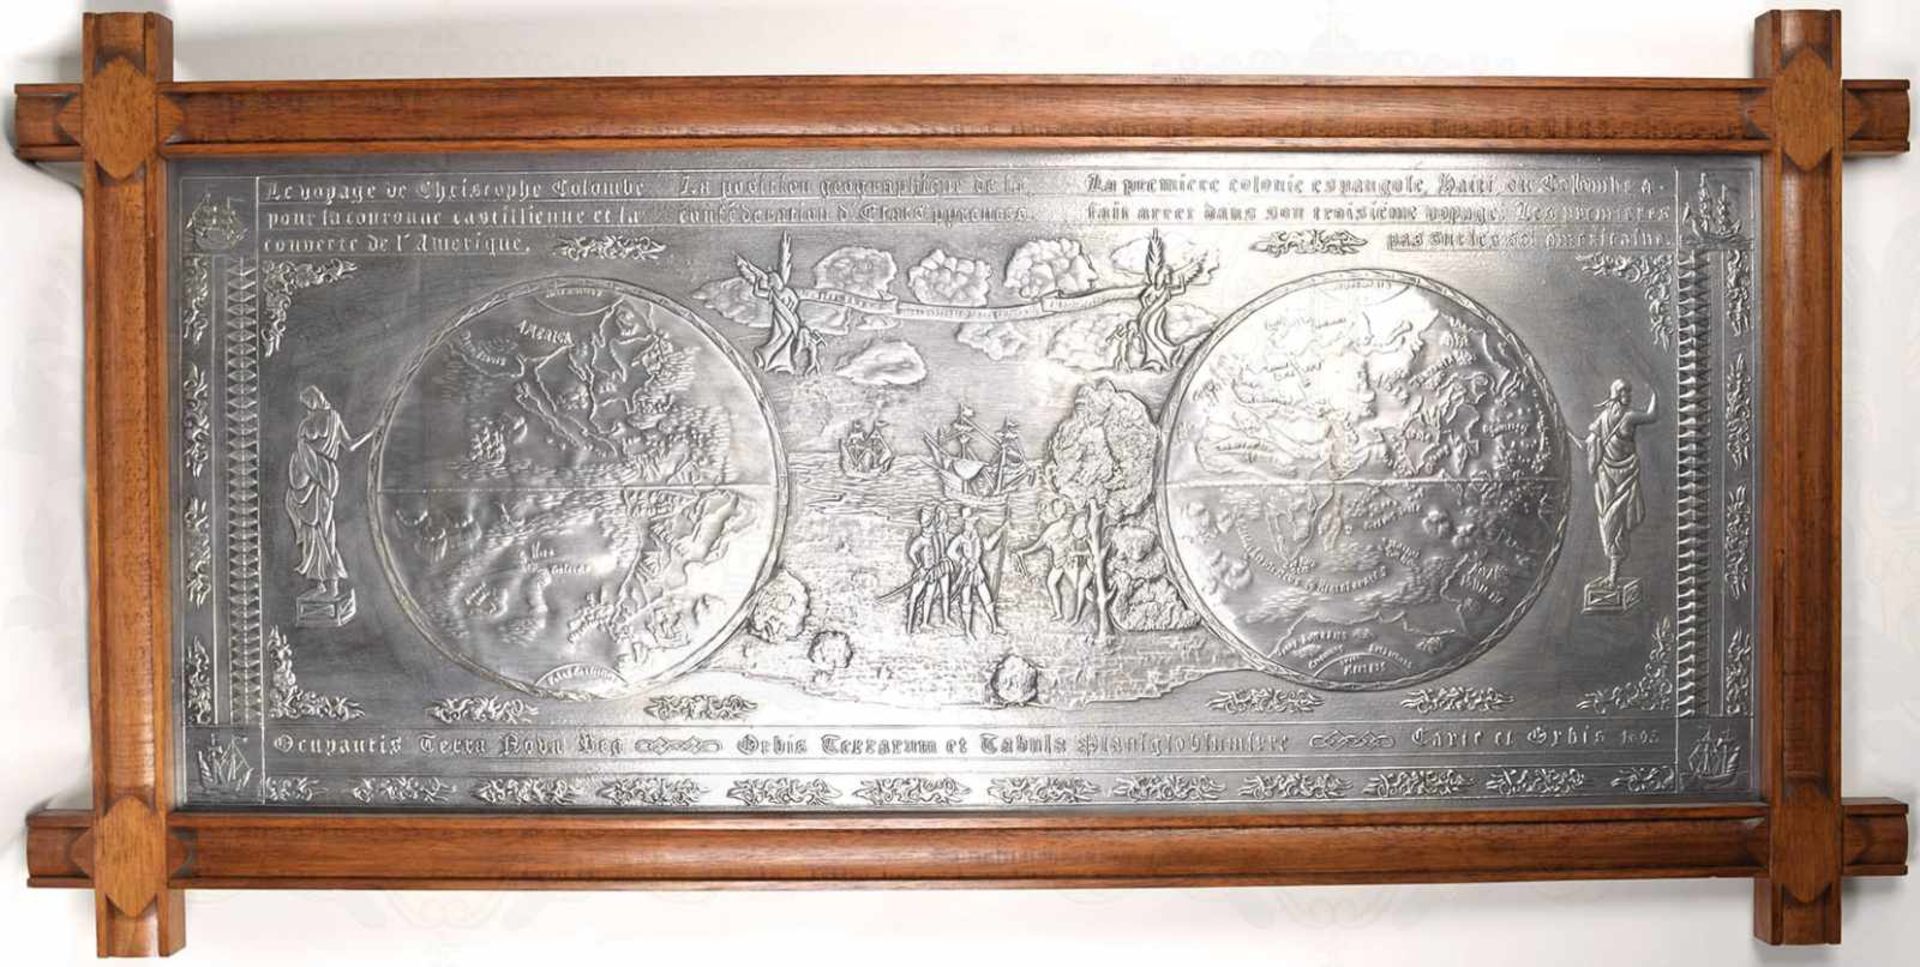 WANDRELIEF „OCUPANTIS TERRA NOVA“, erhabene Darstellung der Landung von Christoph Kolumbus in